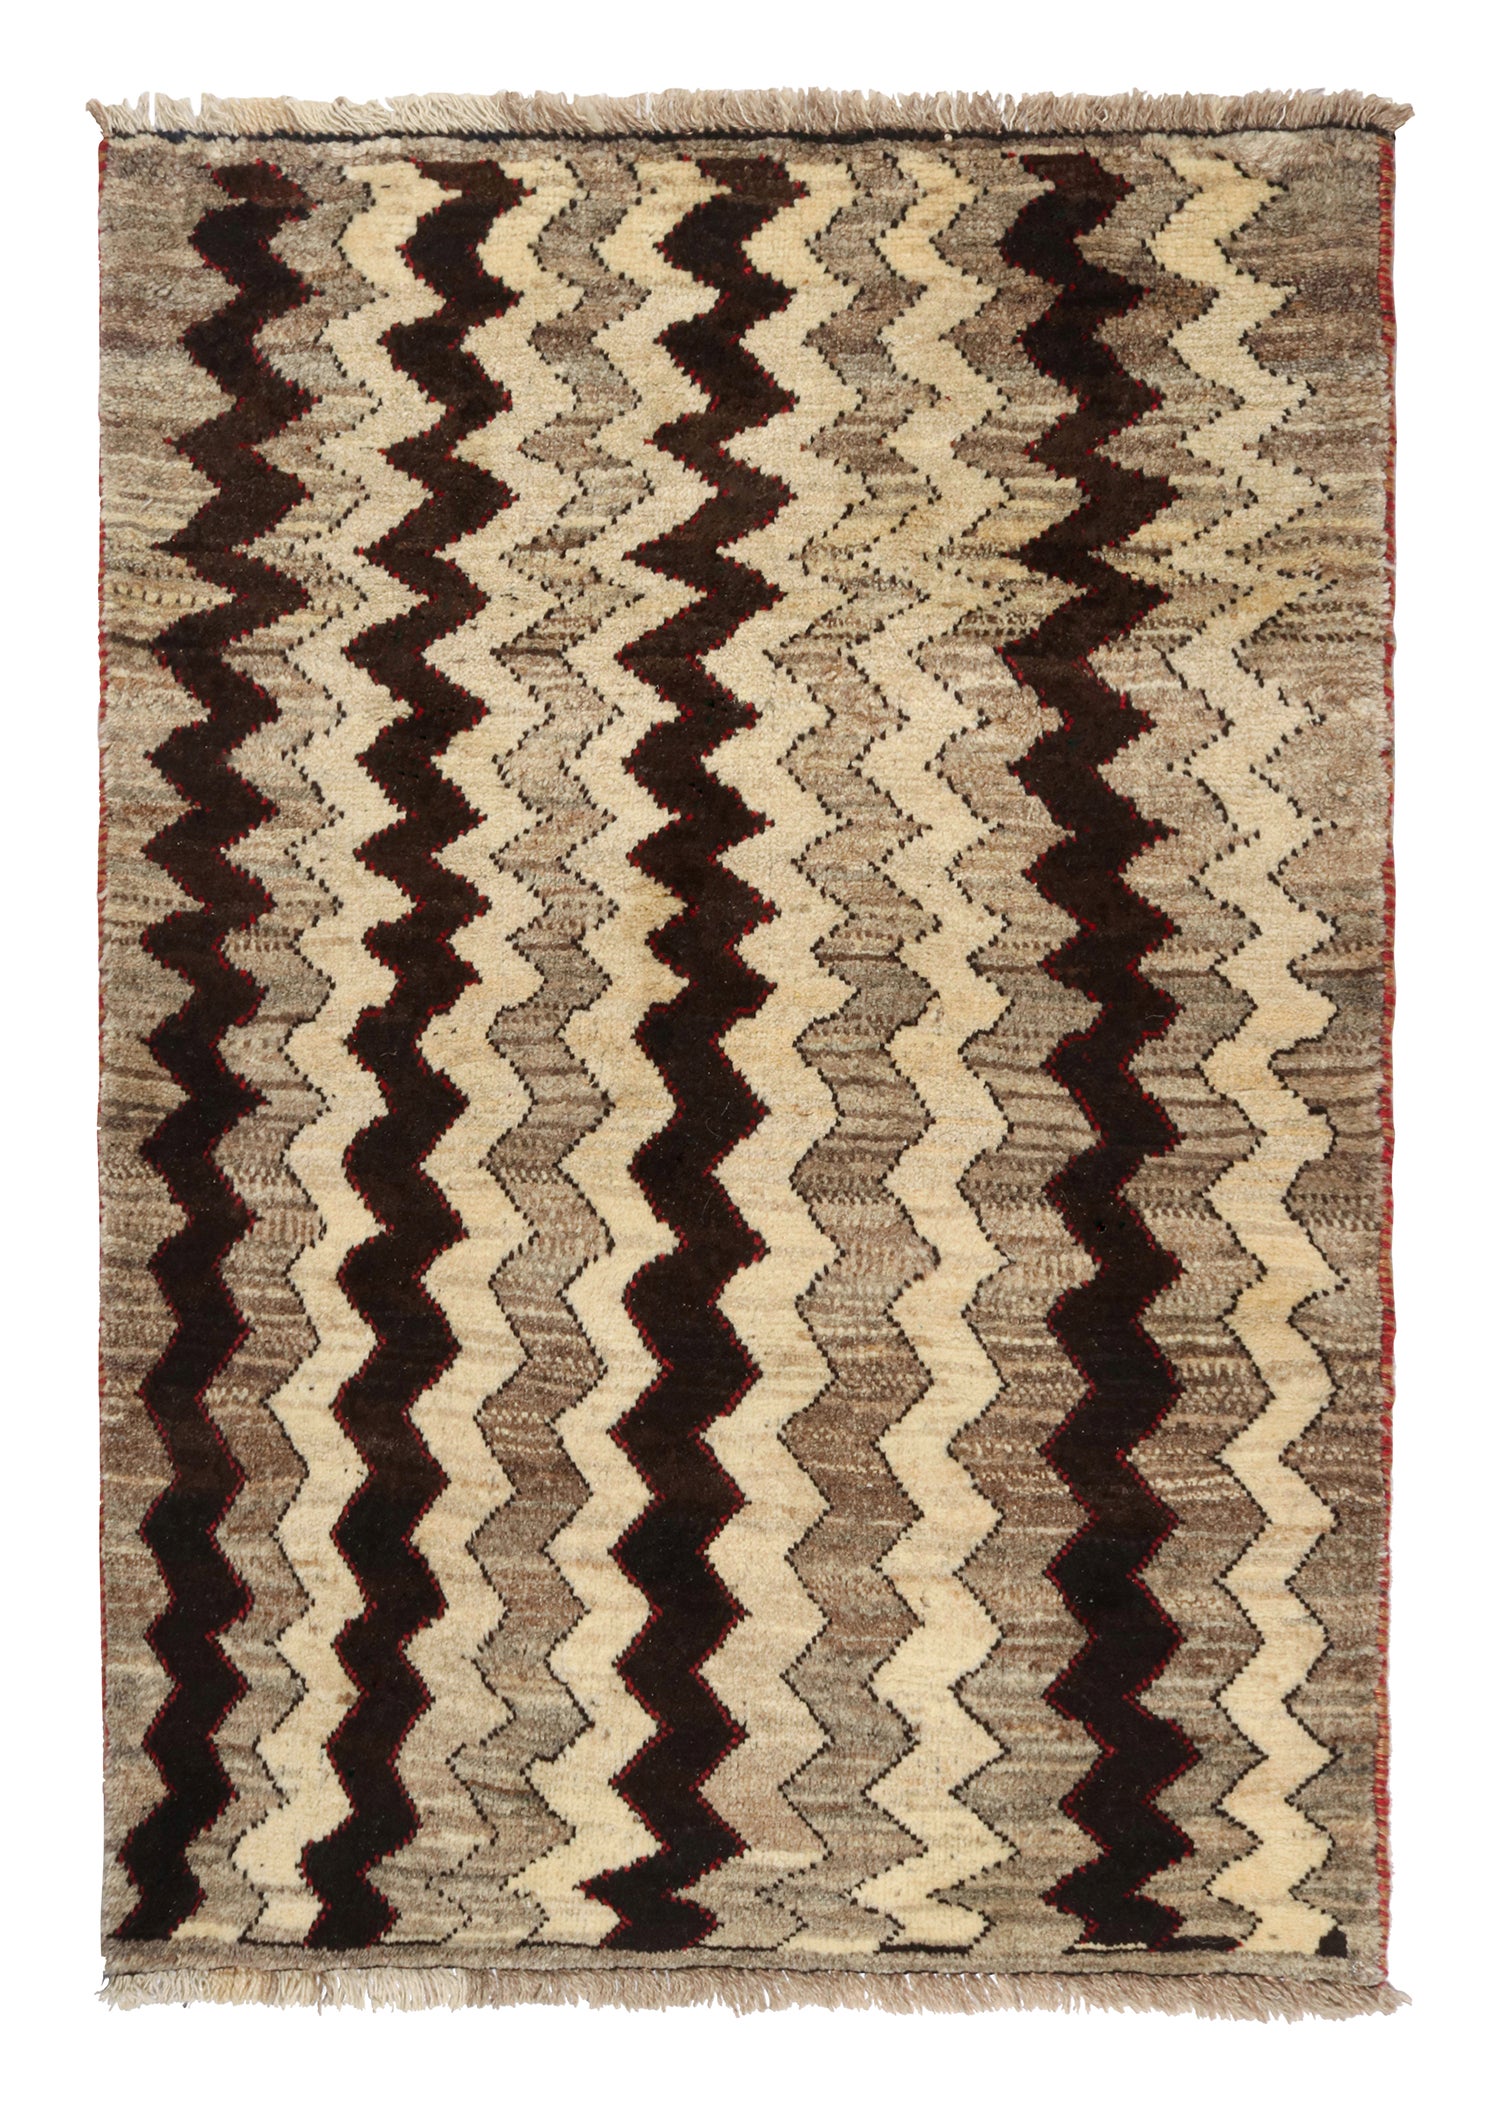 Vintage Gabbeh Tribal Rug in Beige-Brown & Black Chevron Patterns by Rug & Kilim